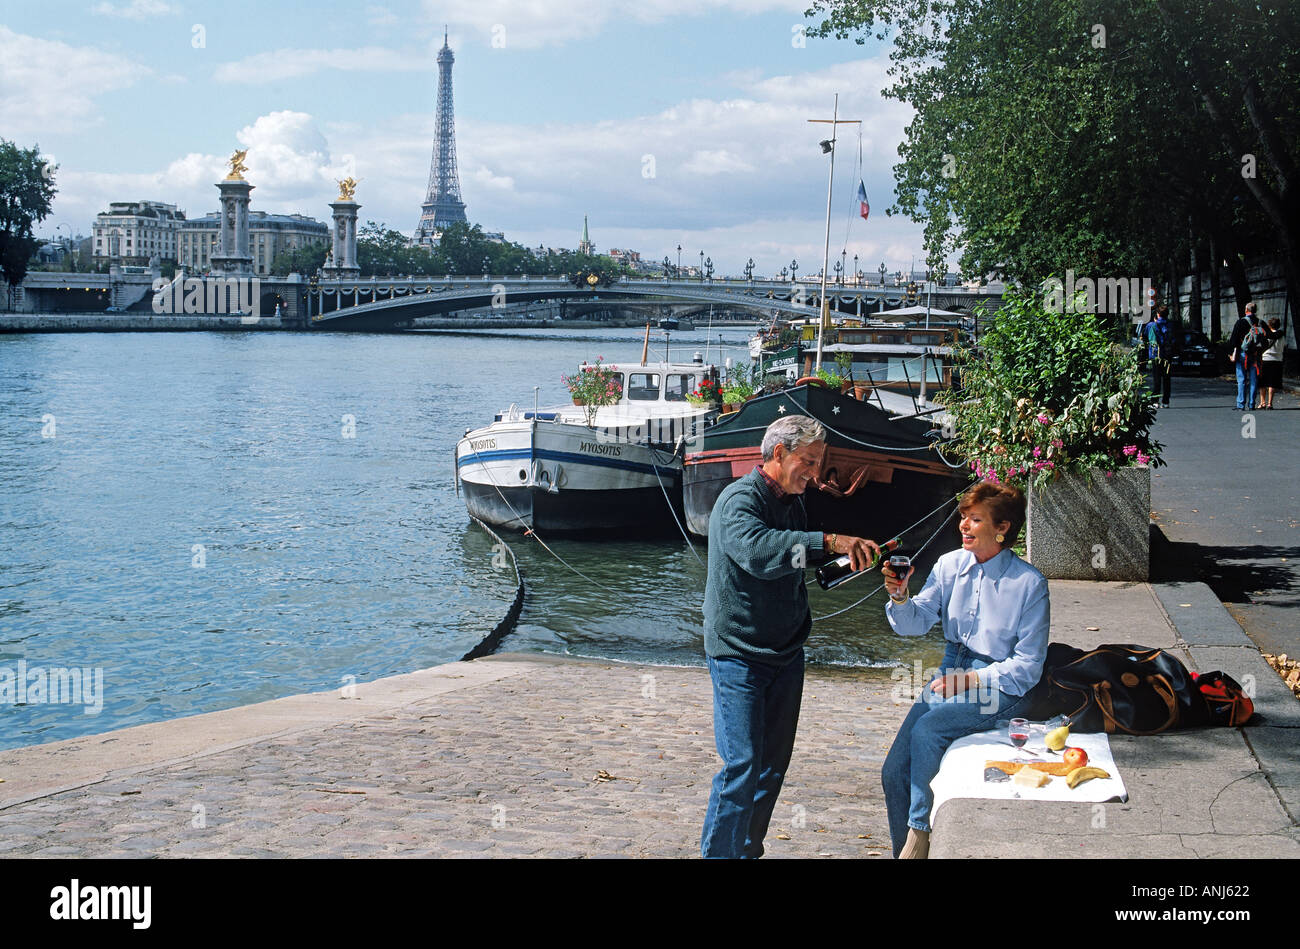 Paar mit Picknick am Ufer mit Eiffelturm Stockfoto